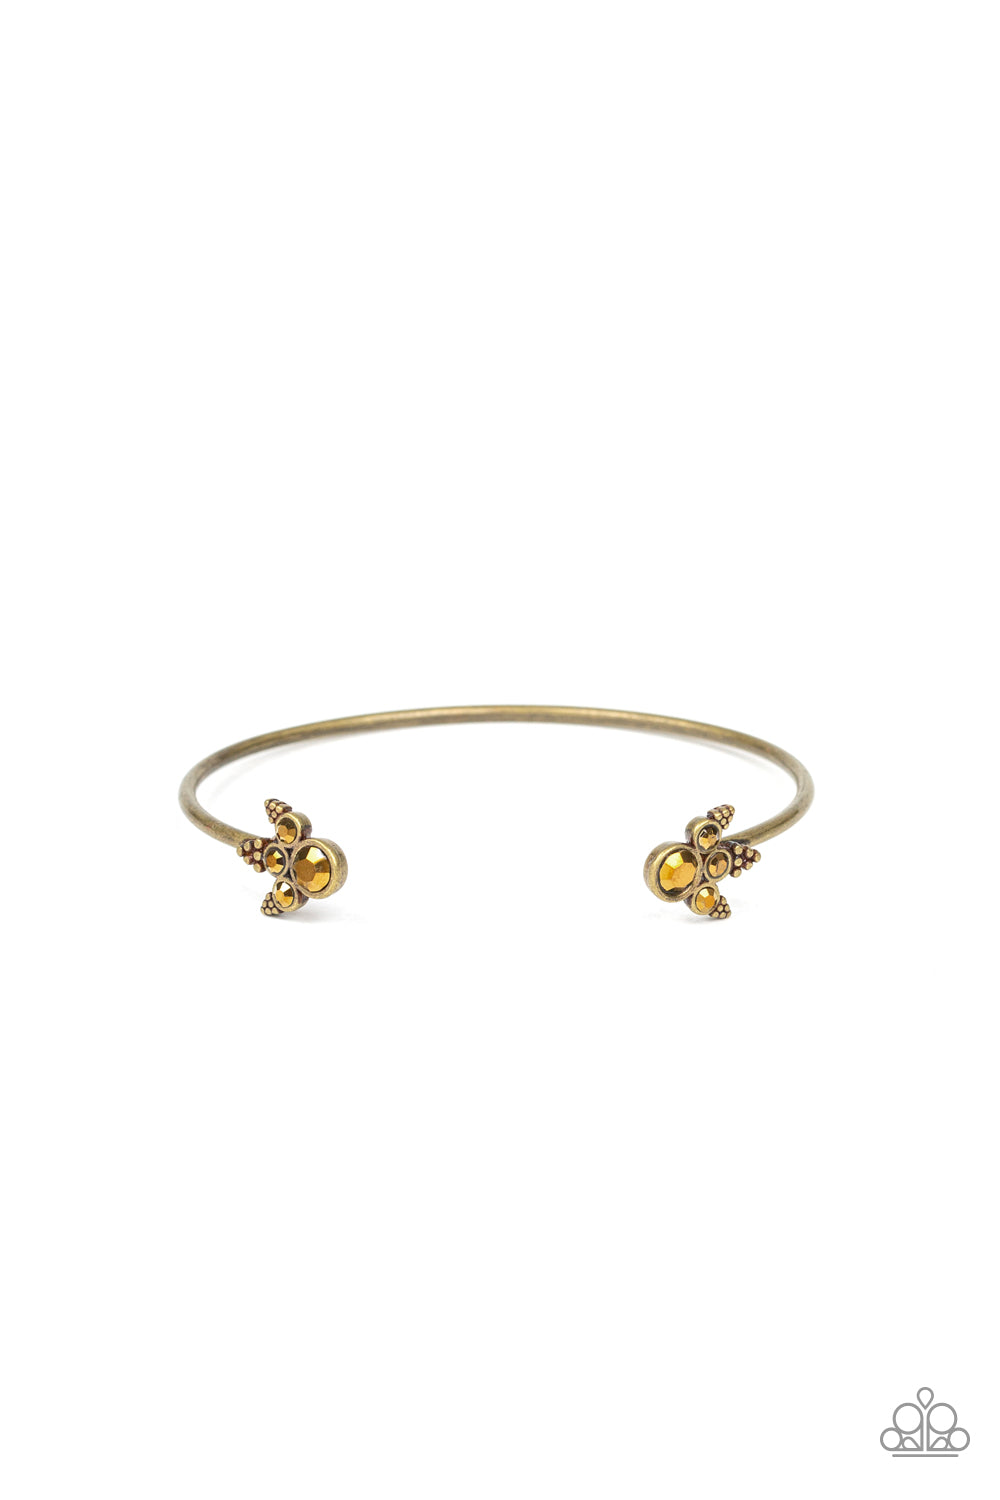 A Bit Rich Brass Bracelet freeshipping - JewLz4u Gemstone Gallery